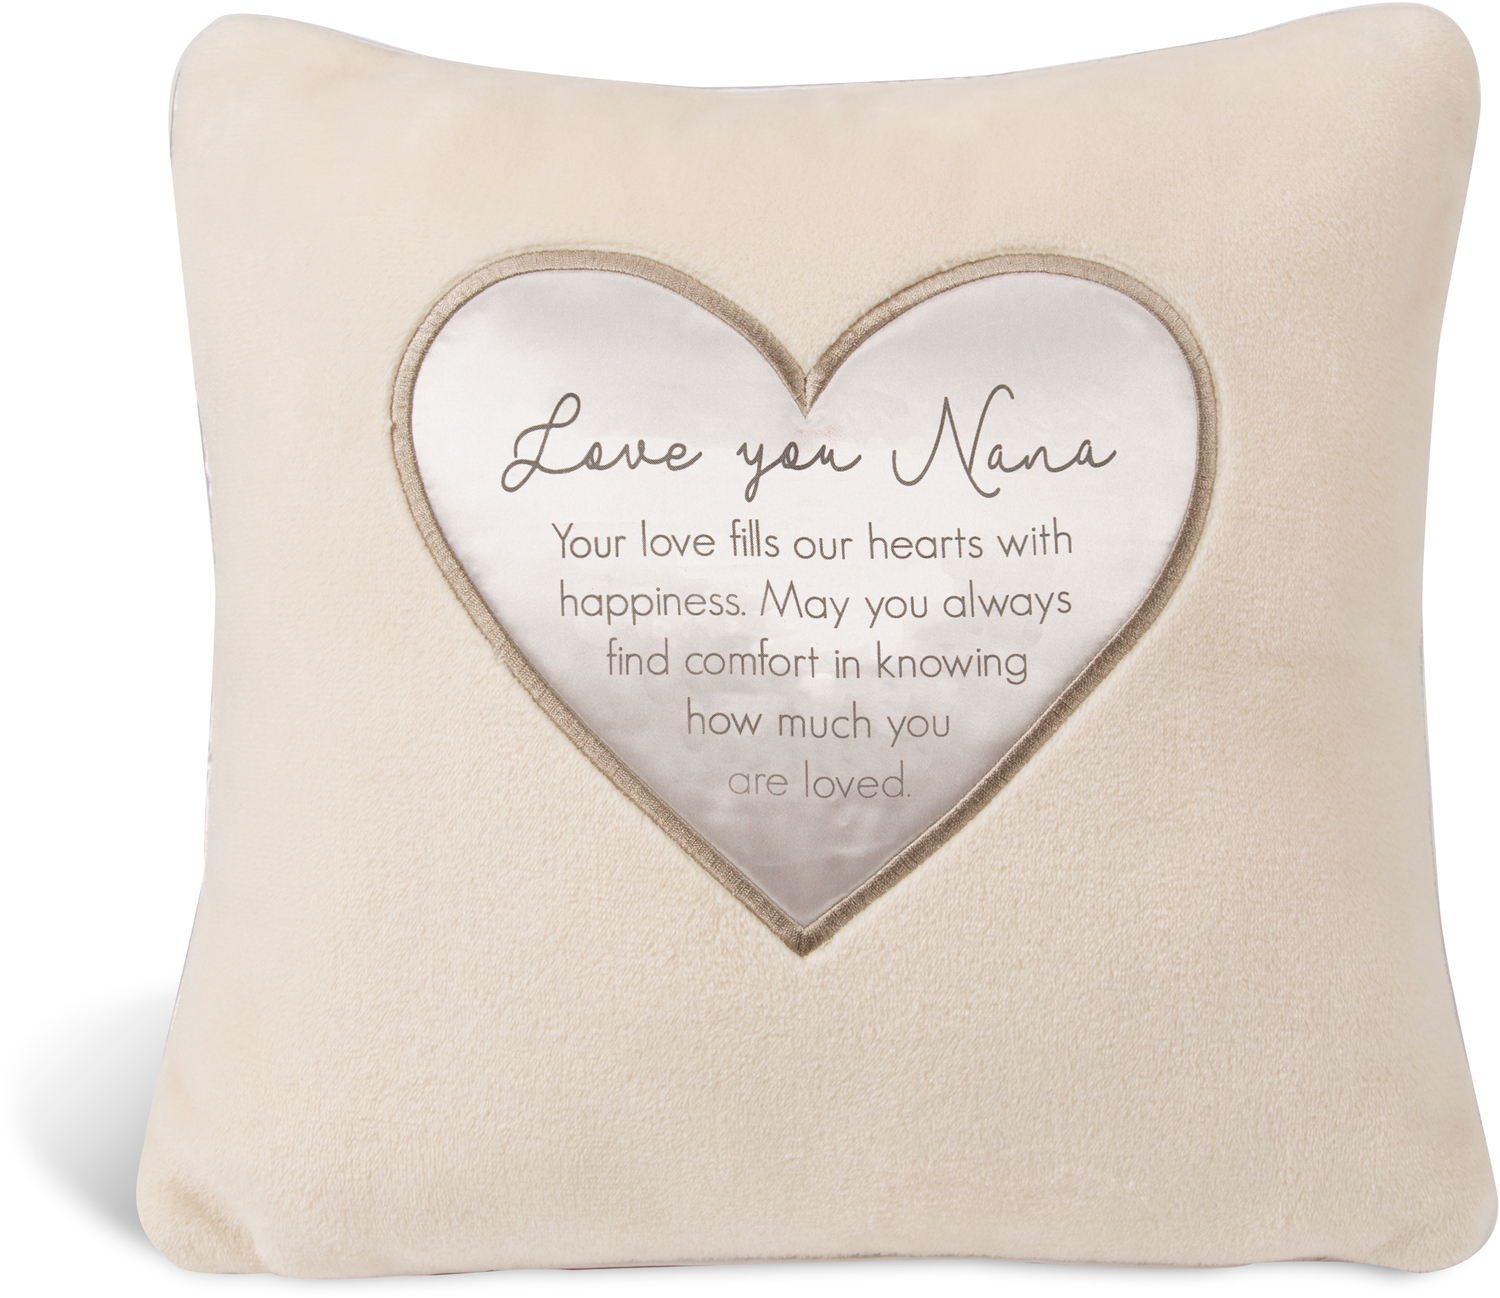 Nana by Comfort Blanket - Nana - 16" Royal Plush Pillow